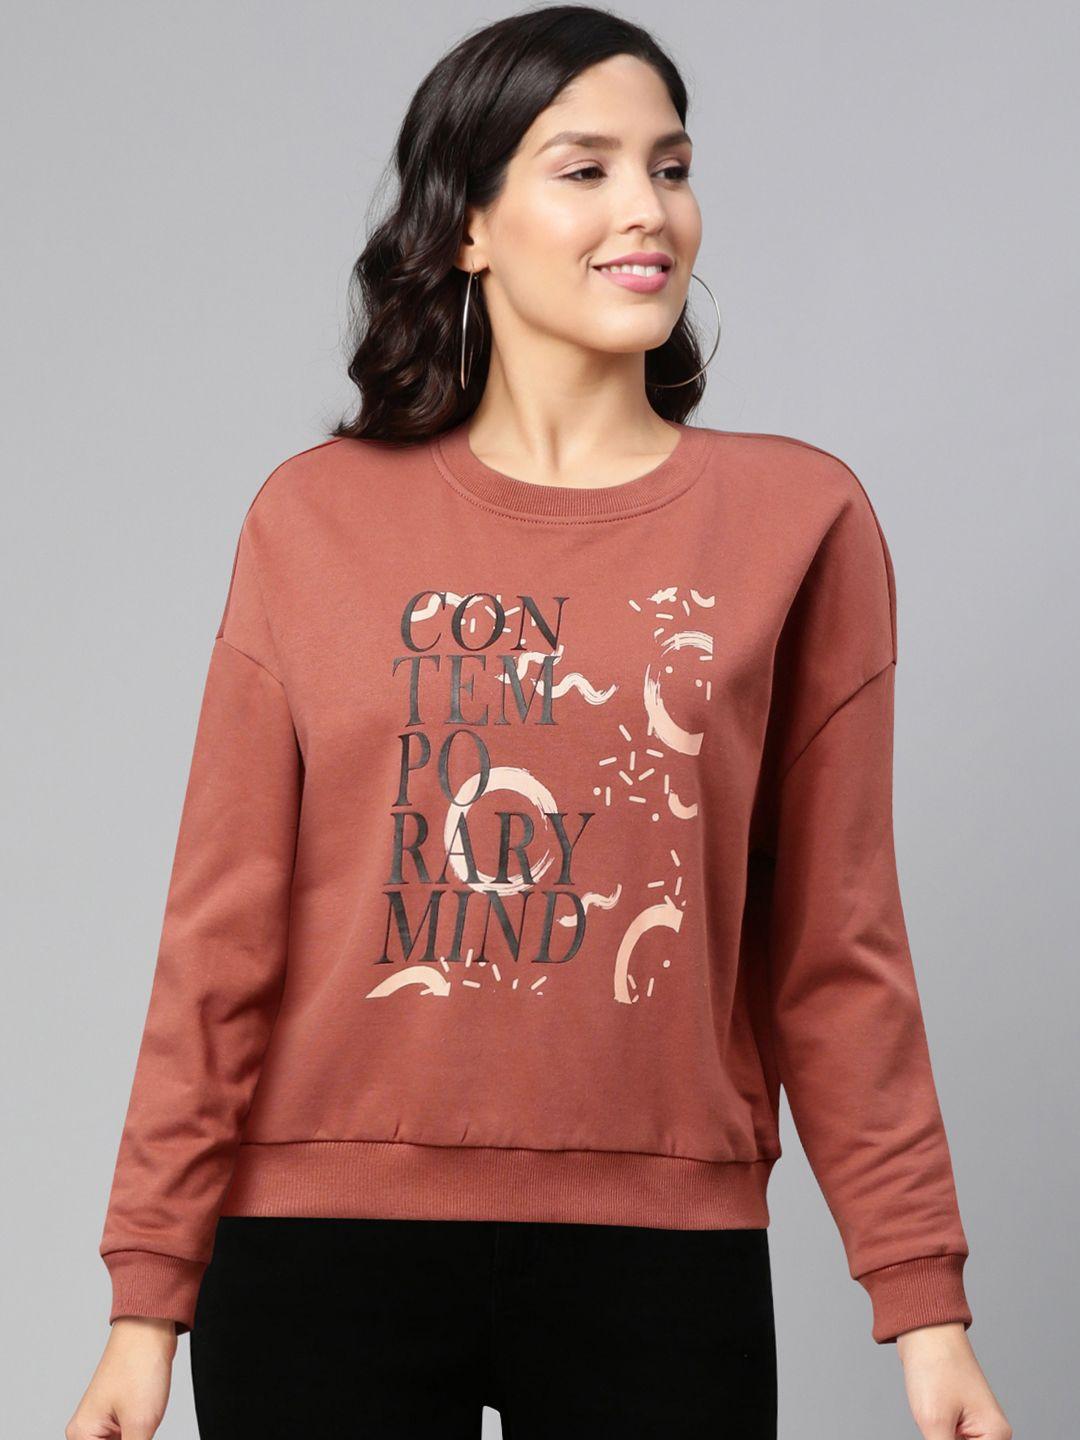 vero moda women rust red & black printed sweatshirt